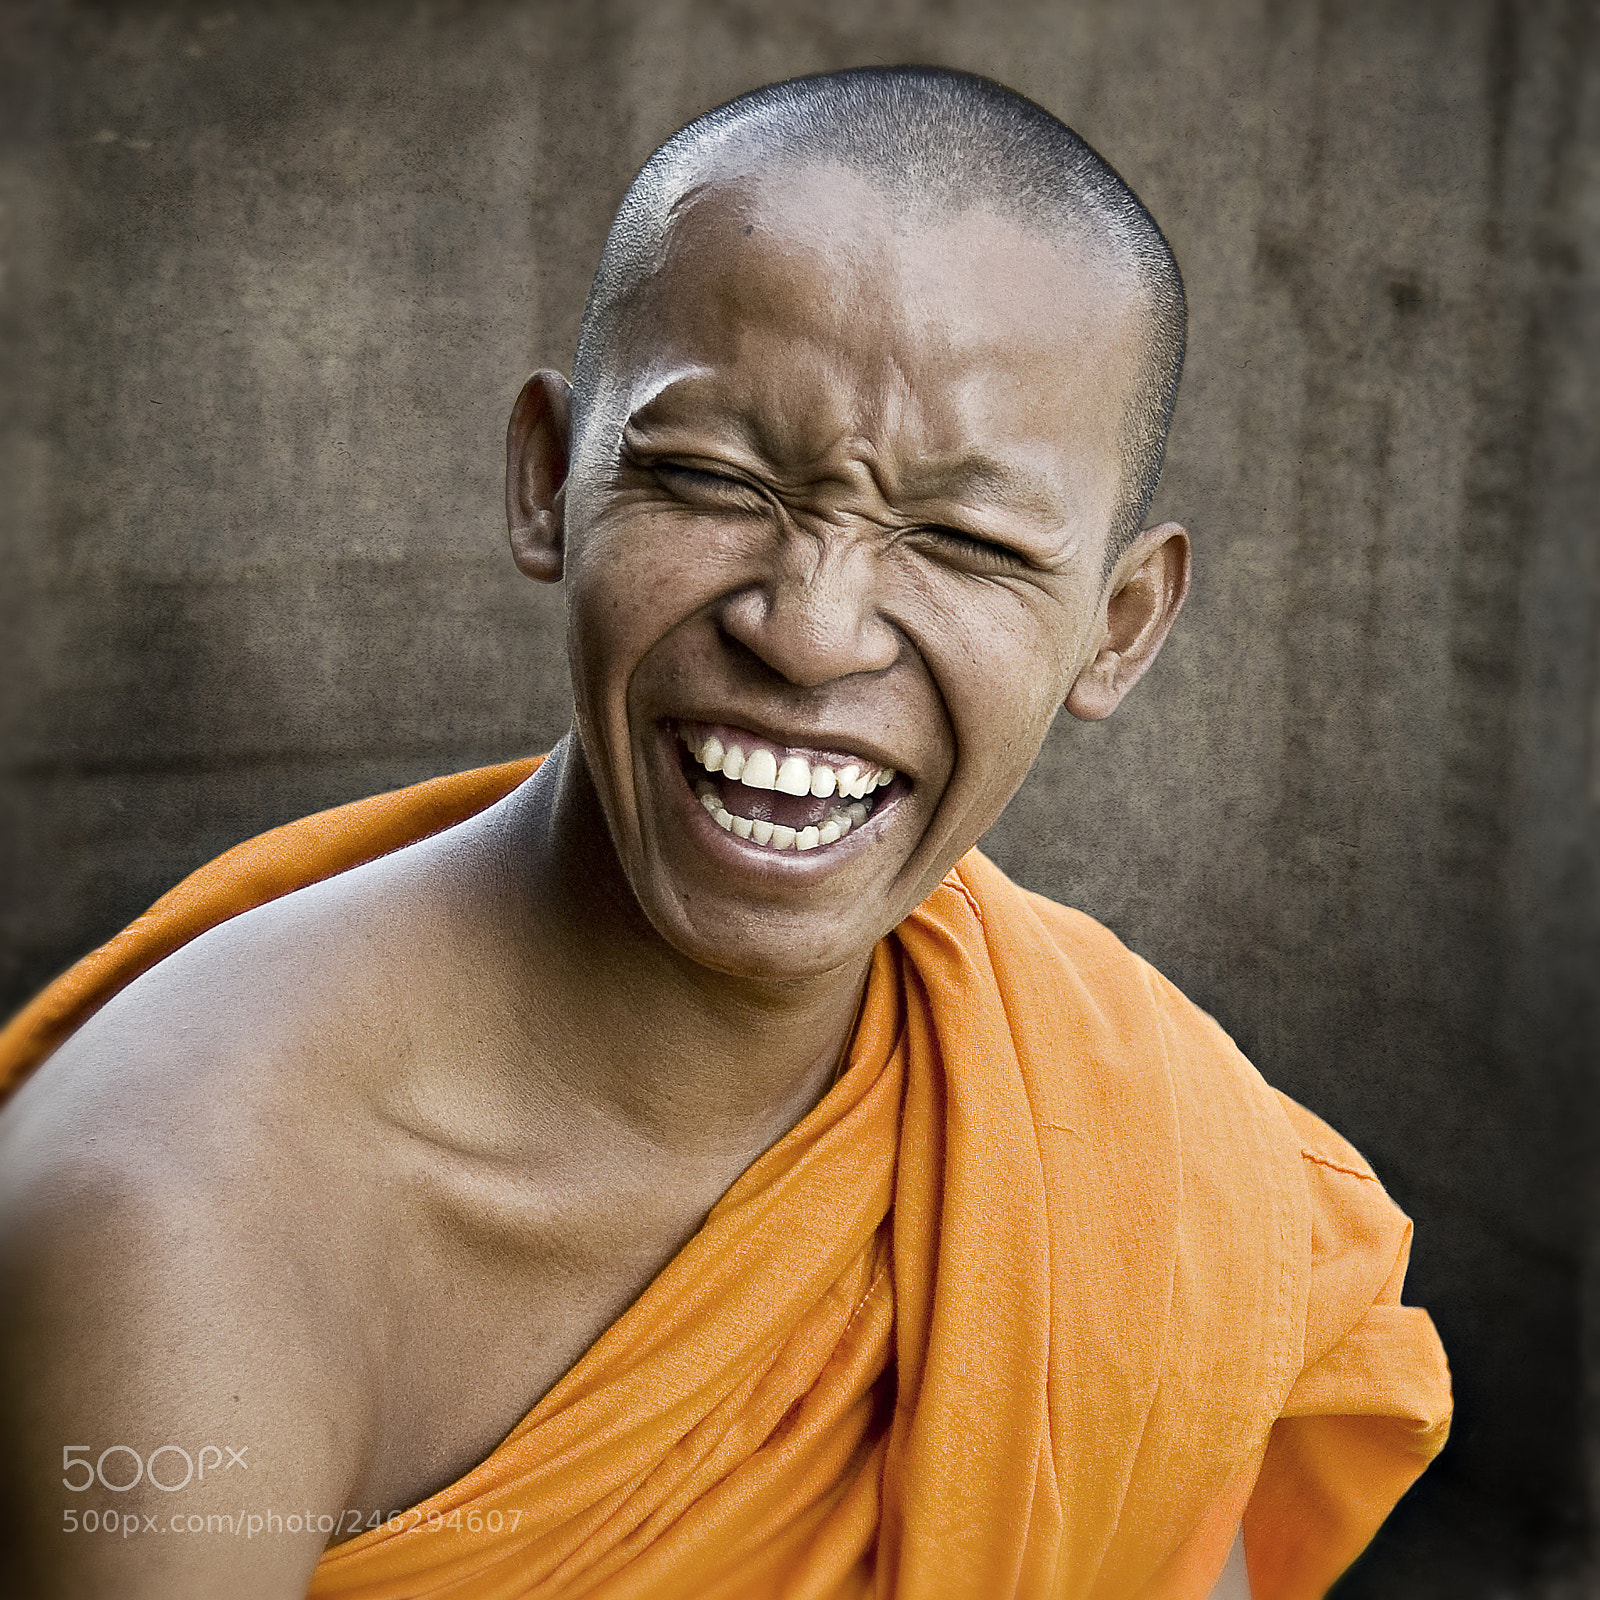 Nikon D70 sample photo. Happy monk / cambodia photography